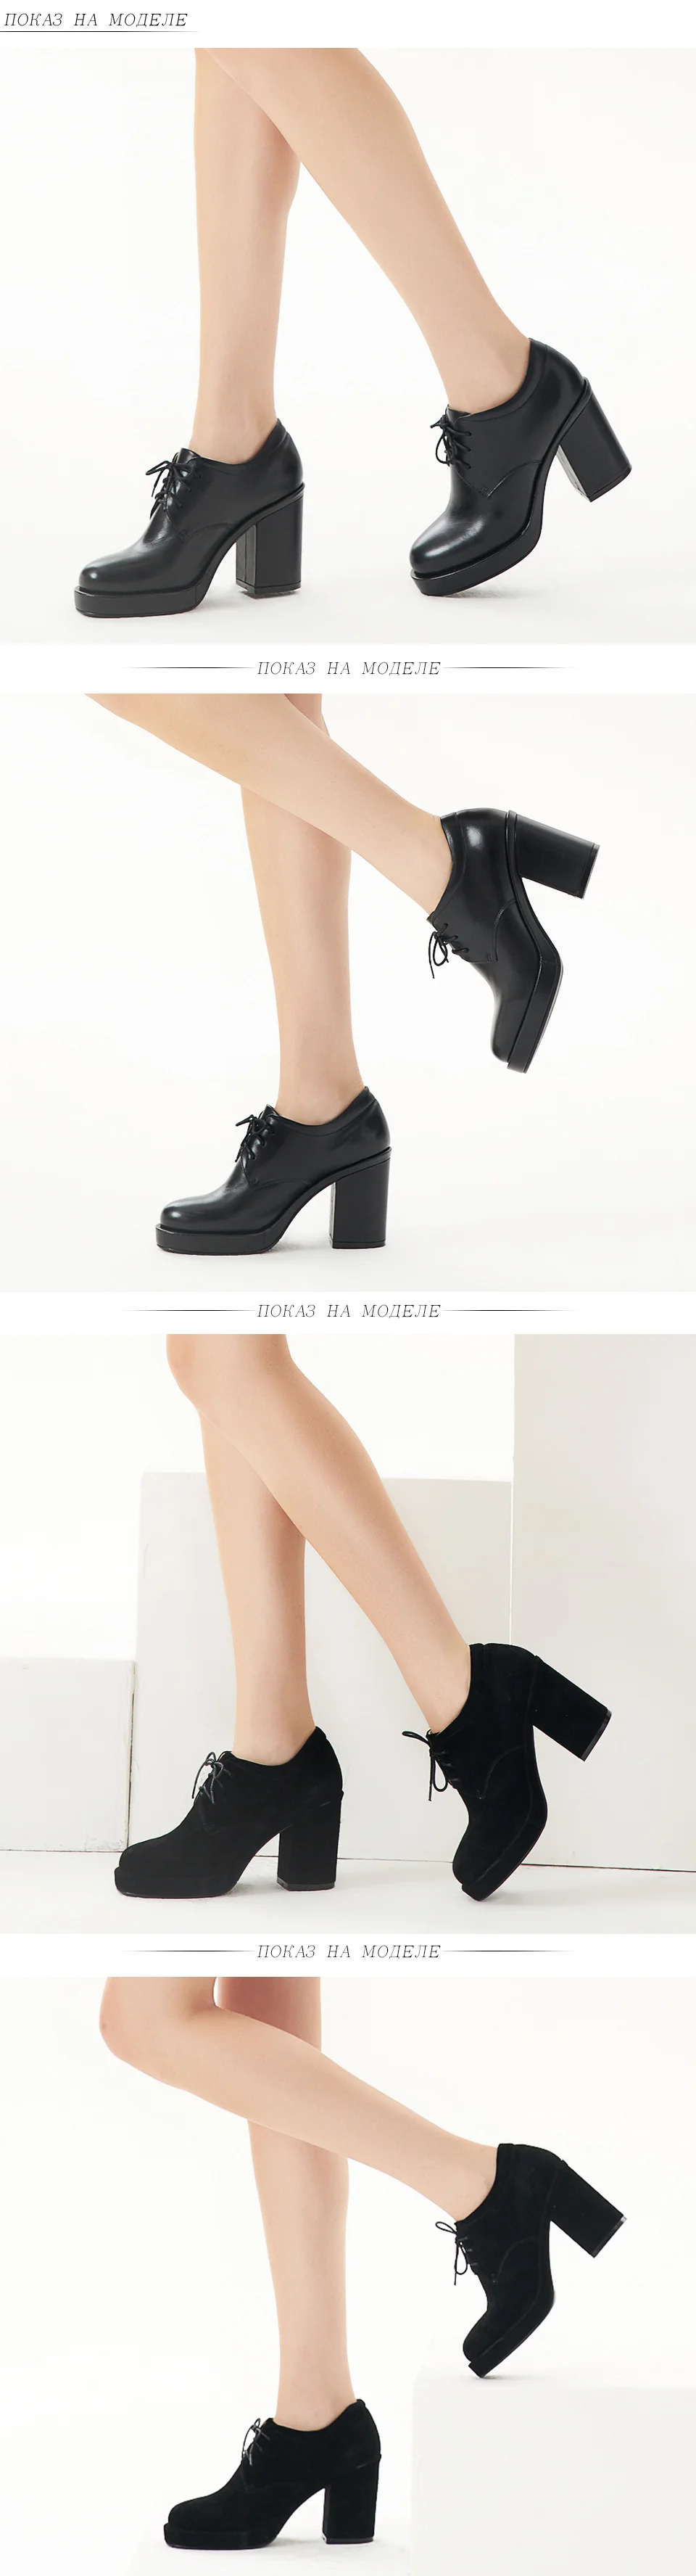 Bassiriana элегантный натуральная кожа замша шнуровка обувь женская ботинки осень весна Обувь на платформе на квадрадтном высоком каблуке с круглыми носками 35-40 размер черный цвет Мода